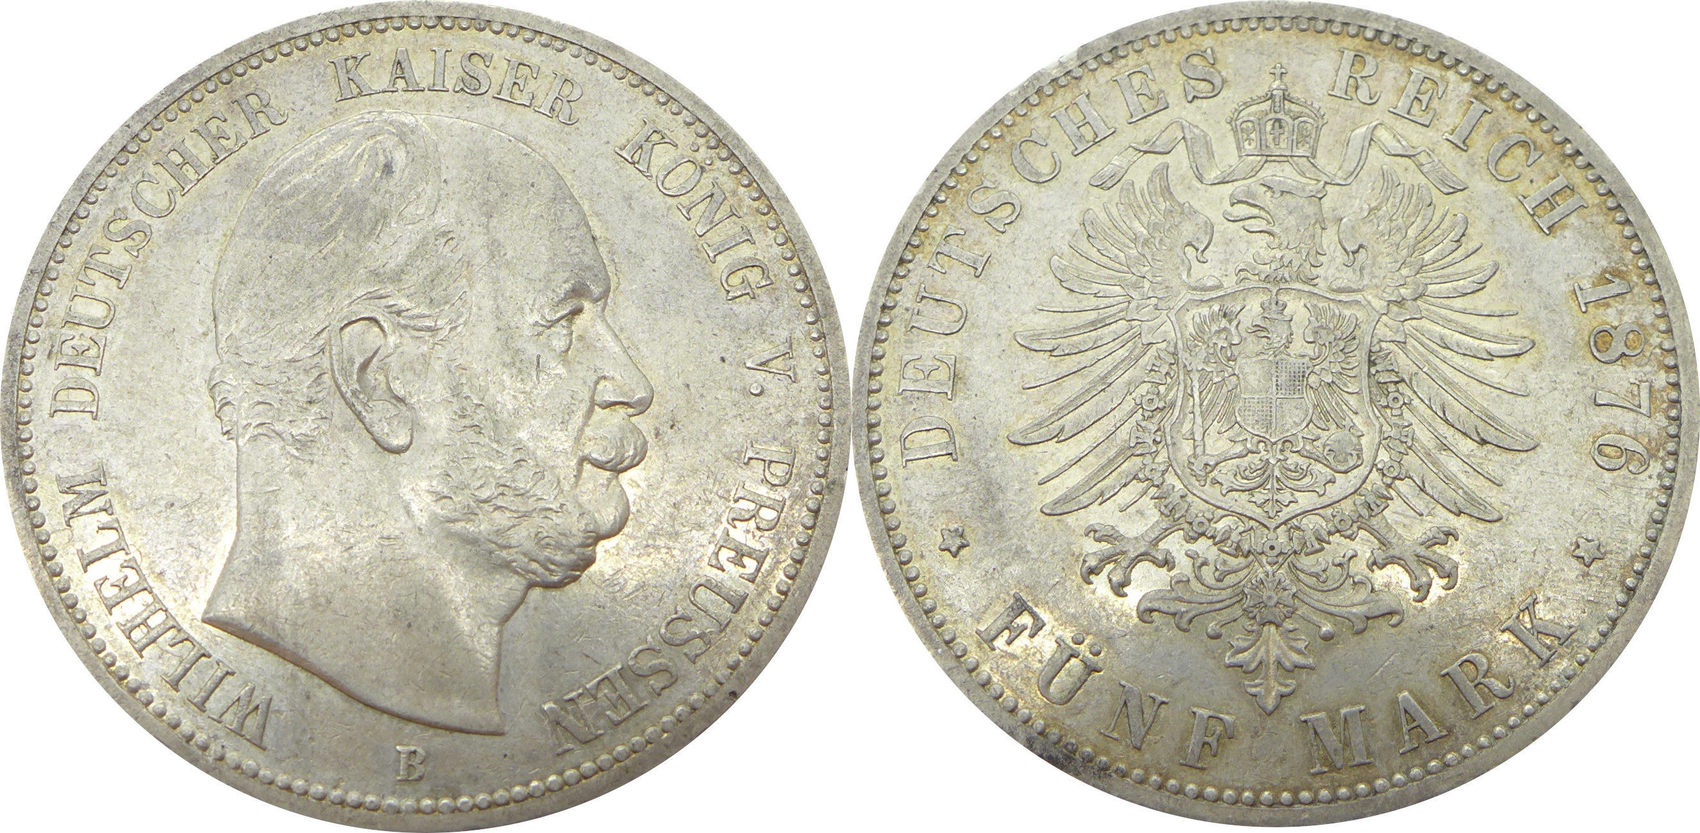 Fünf 5 mark deutsches reich 1876 b wilhelm preussen kaiser konig v silber silver 